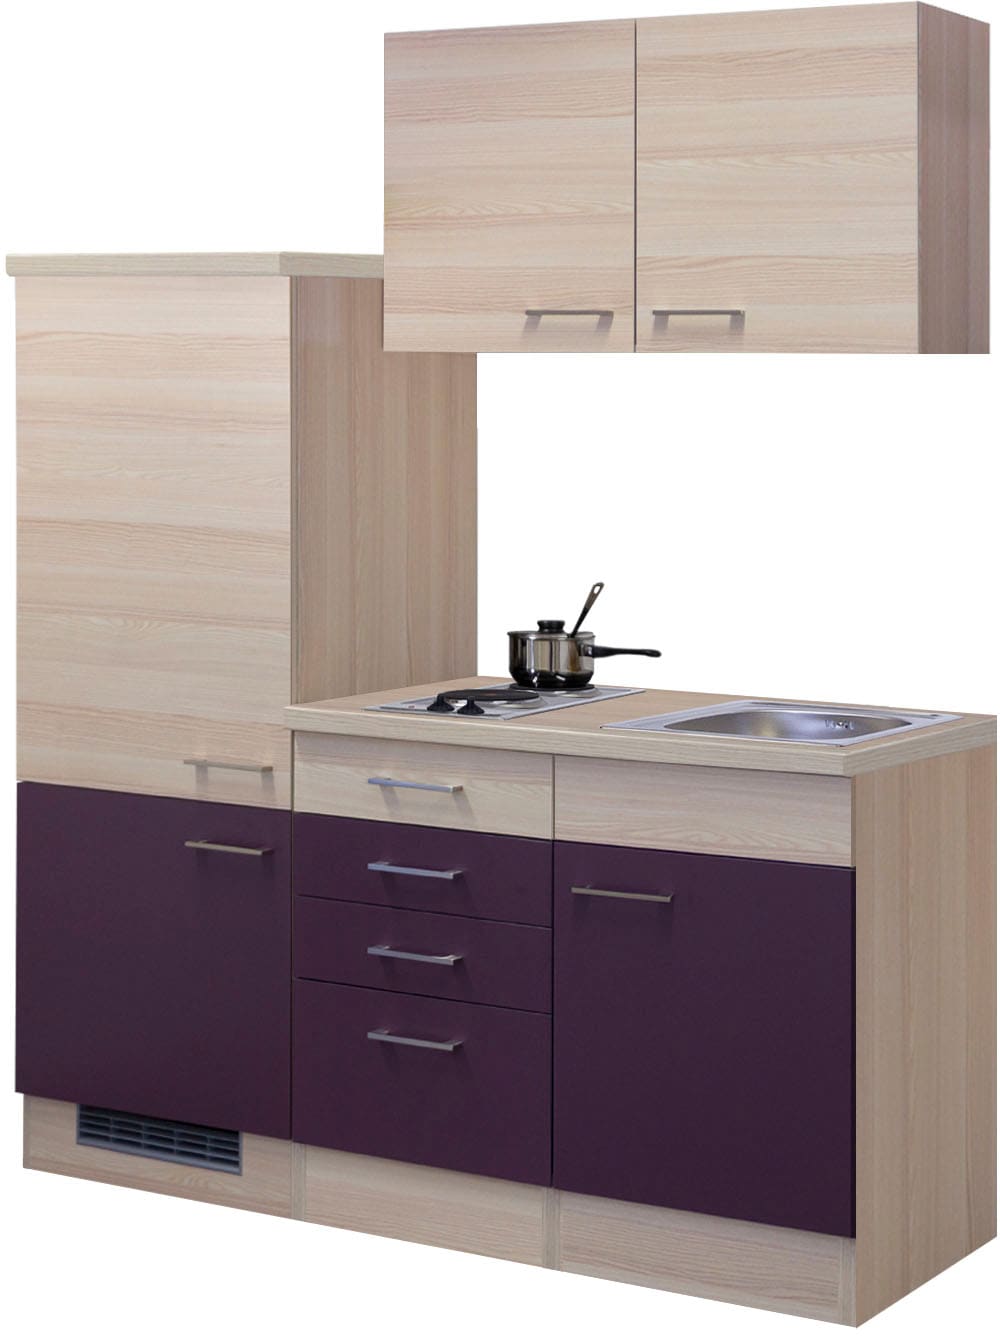 Küche »Portland«, Gesamtbreite 160 cm, mit Einbau-Kühlschrank, Kochfeld und Spüle etc.